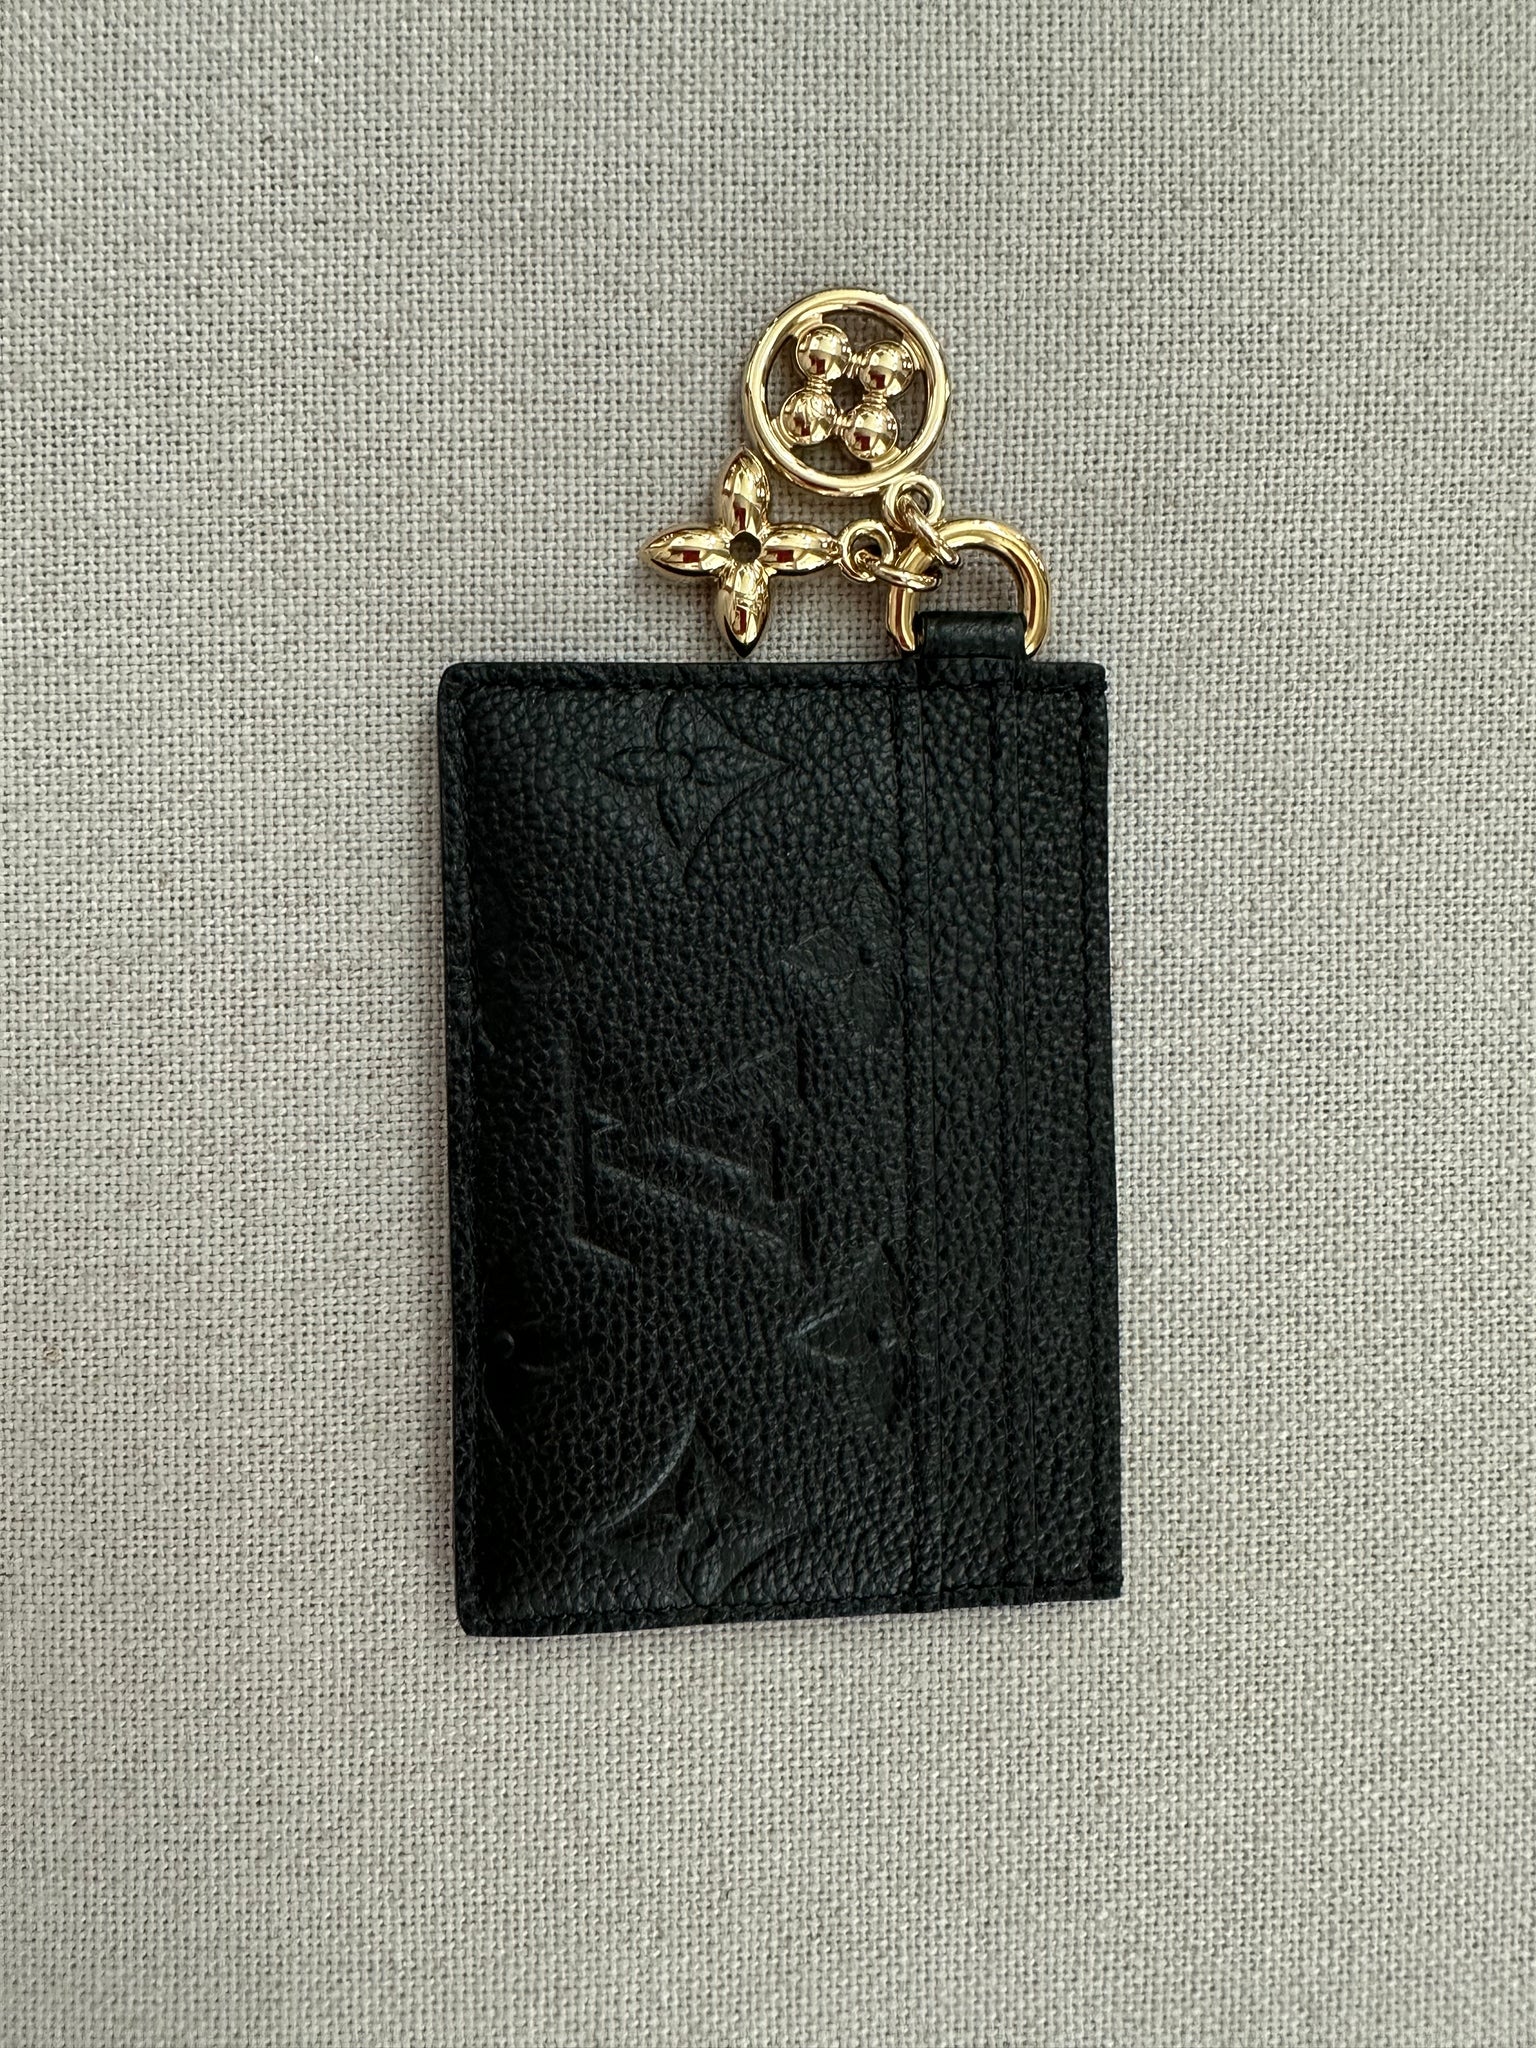 Louis Vuitton Empreinte Charms Card Holder Black – DAC